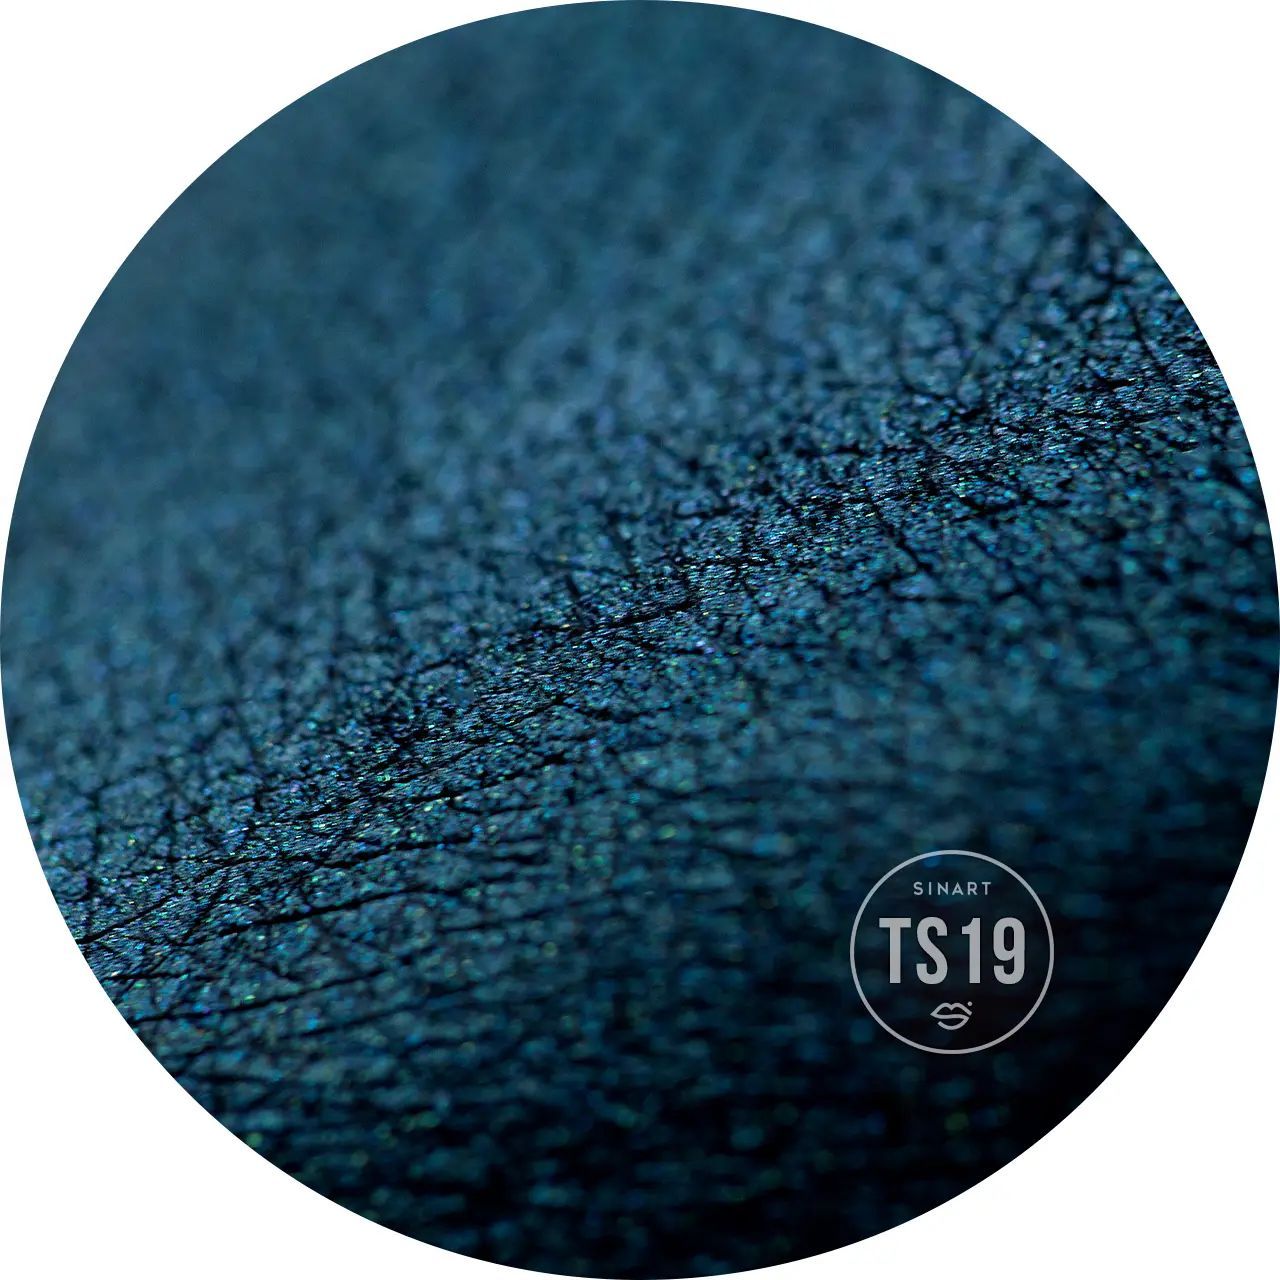 Прессованные тени для век Sinart TS19 Extra Dimension Velor Eyeshadow - фото 2